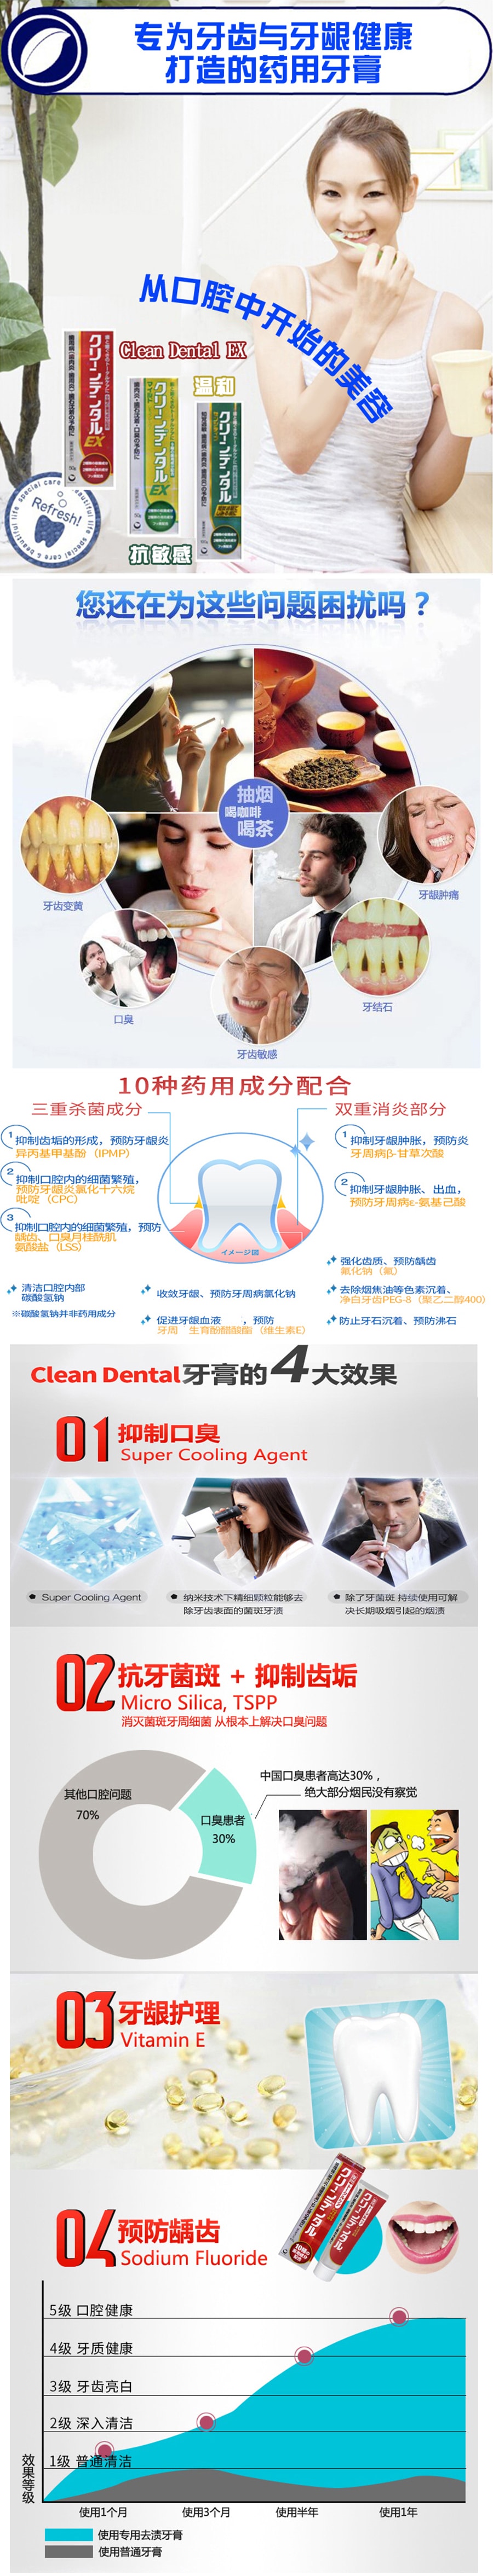 【日本直郵】 第一三共 牙膏 黃色預防牙周病 防口臭100g